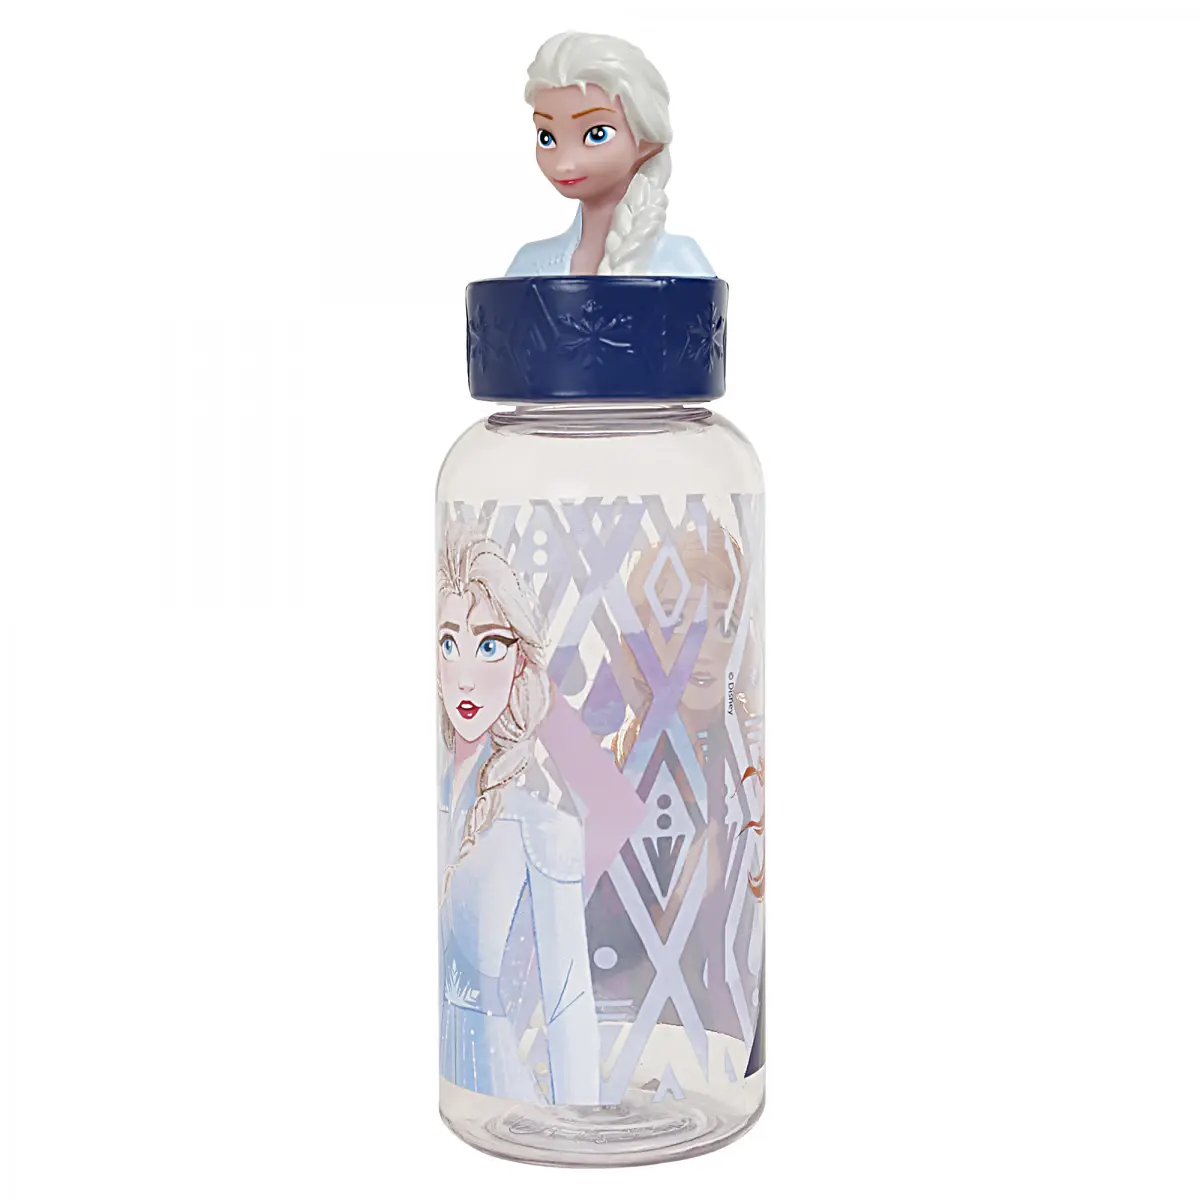 Disney Frozen Stor 3D Figurine Water Bottle, 560ml, Multicolour